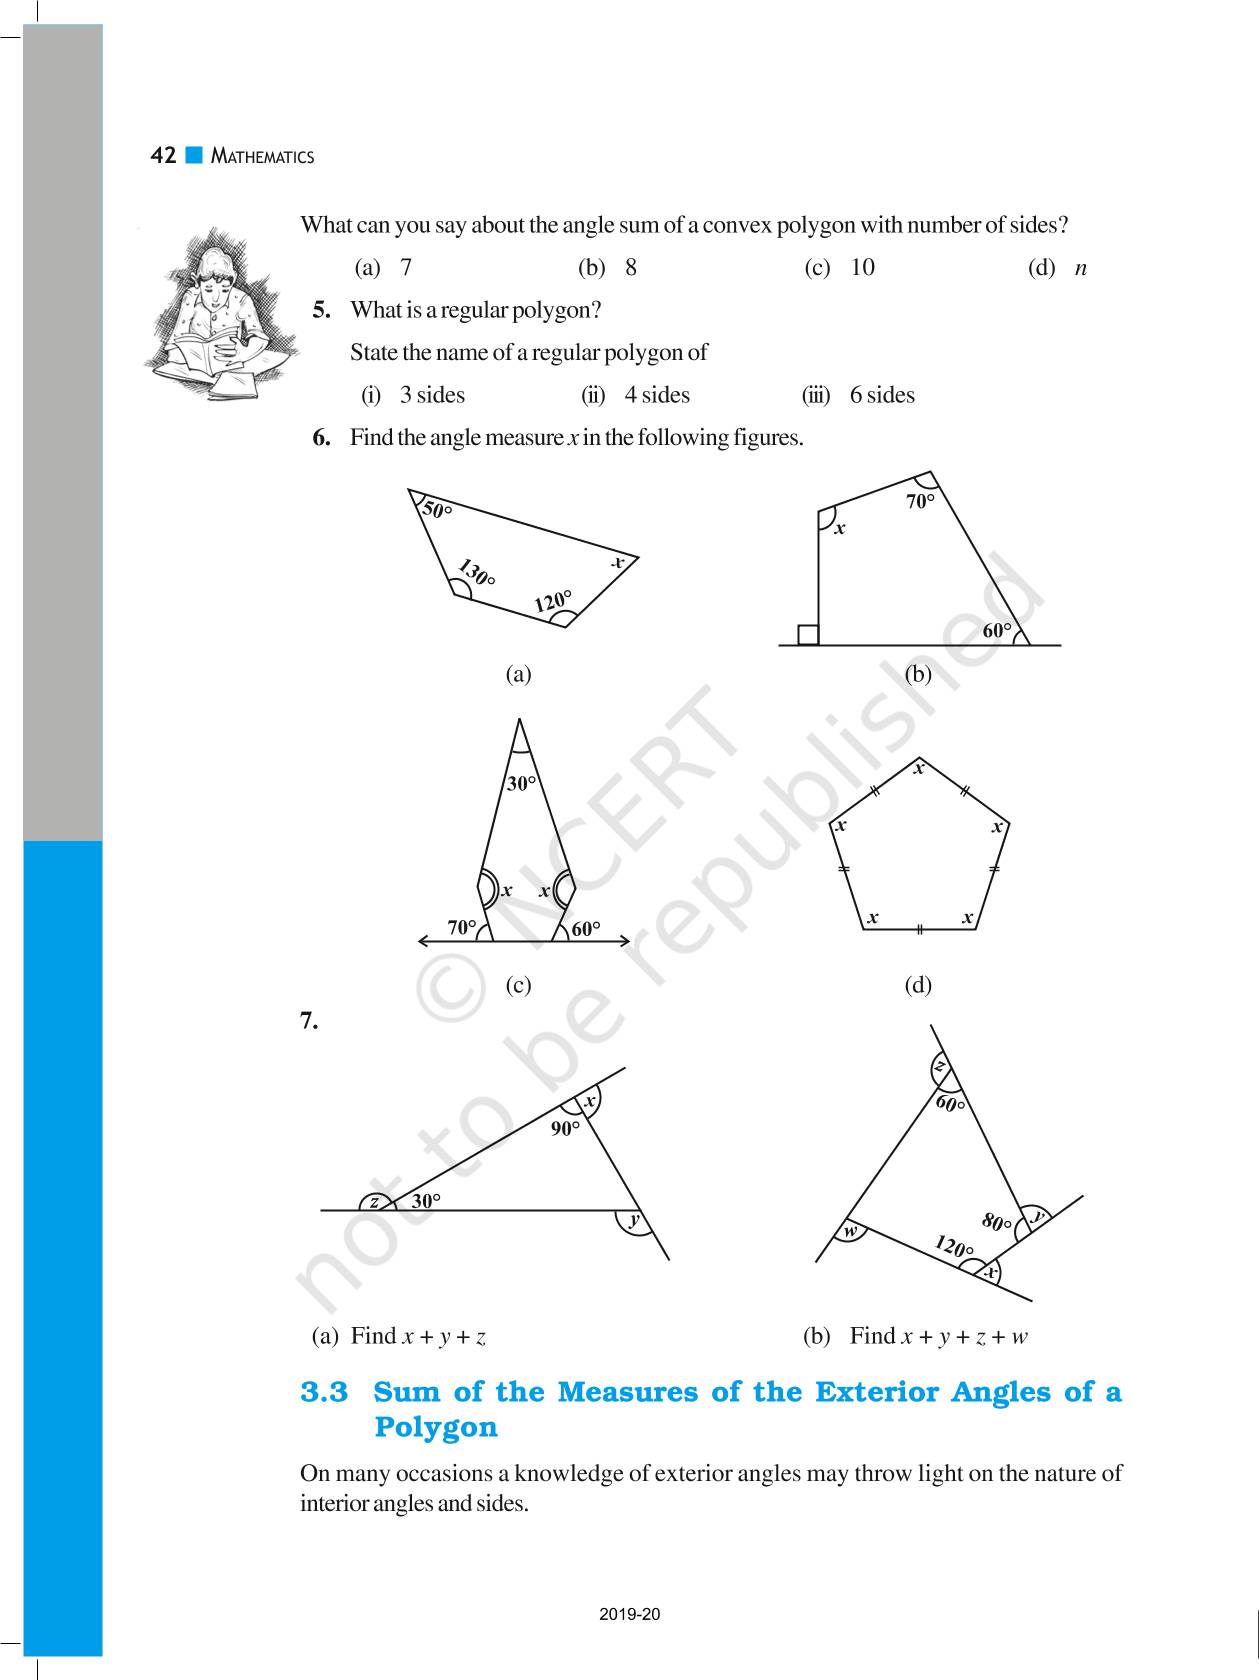 assignment of understanding quadrilaterals class 8